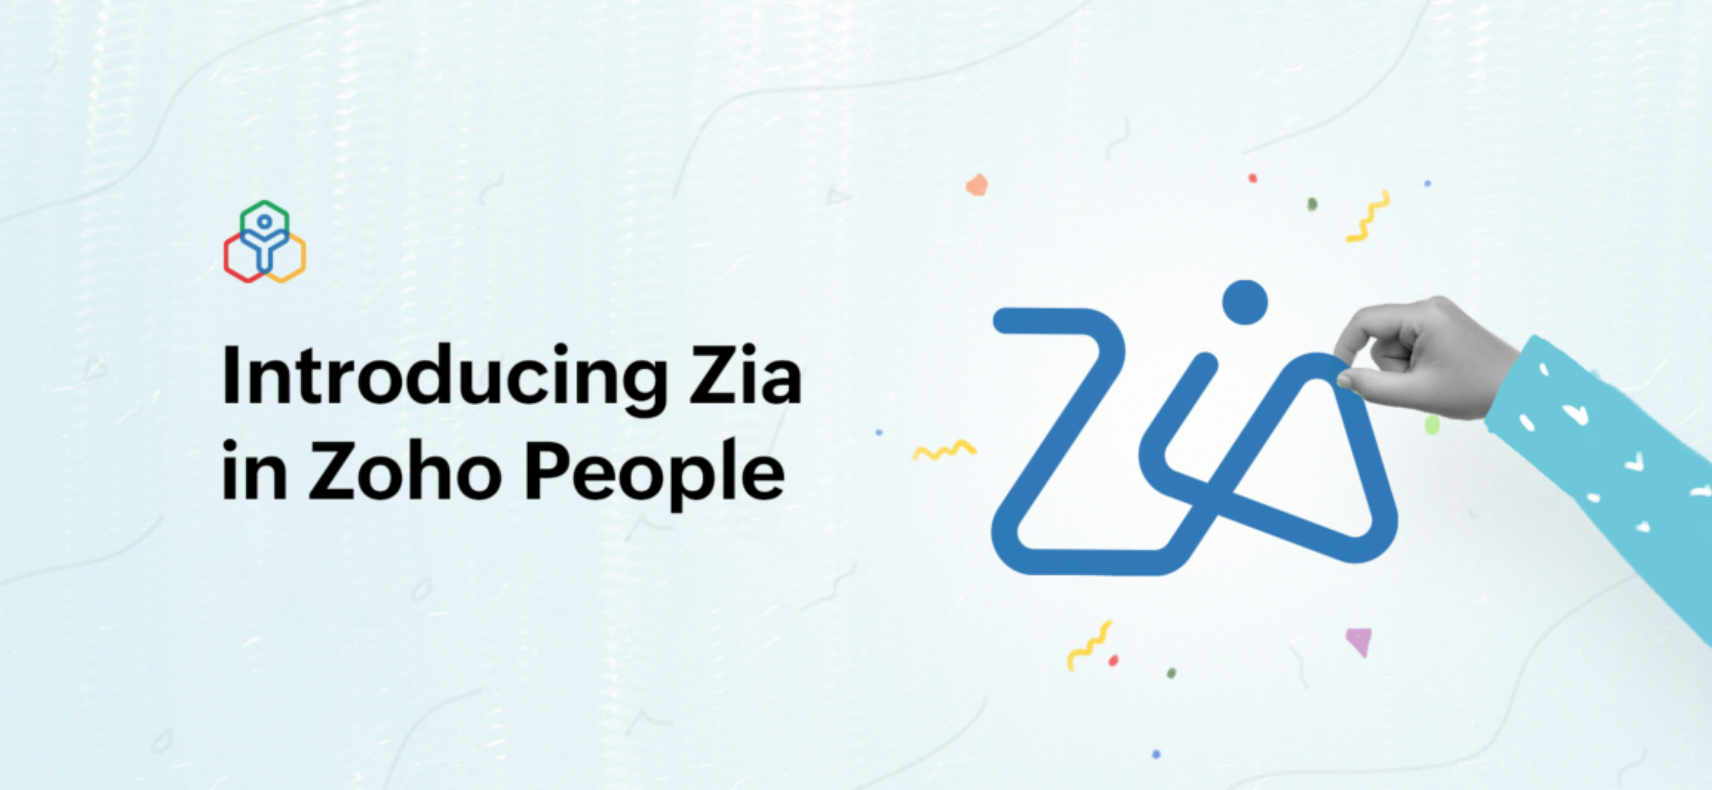 نقدم لكم زيا Zia، مساعد الذكاء الاصطناعي